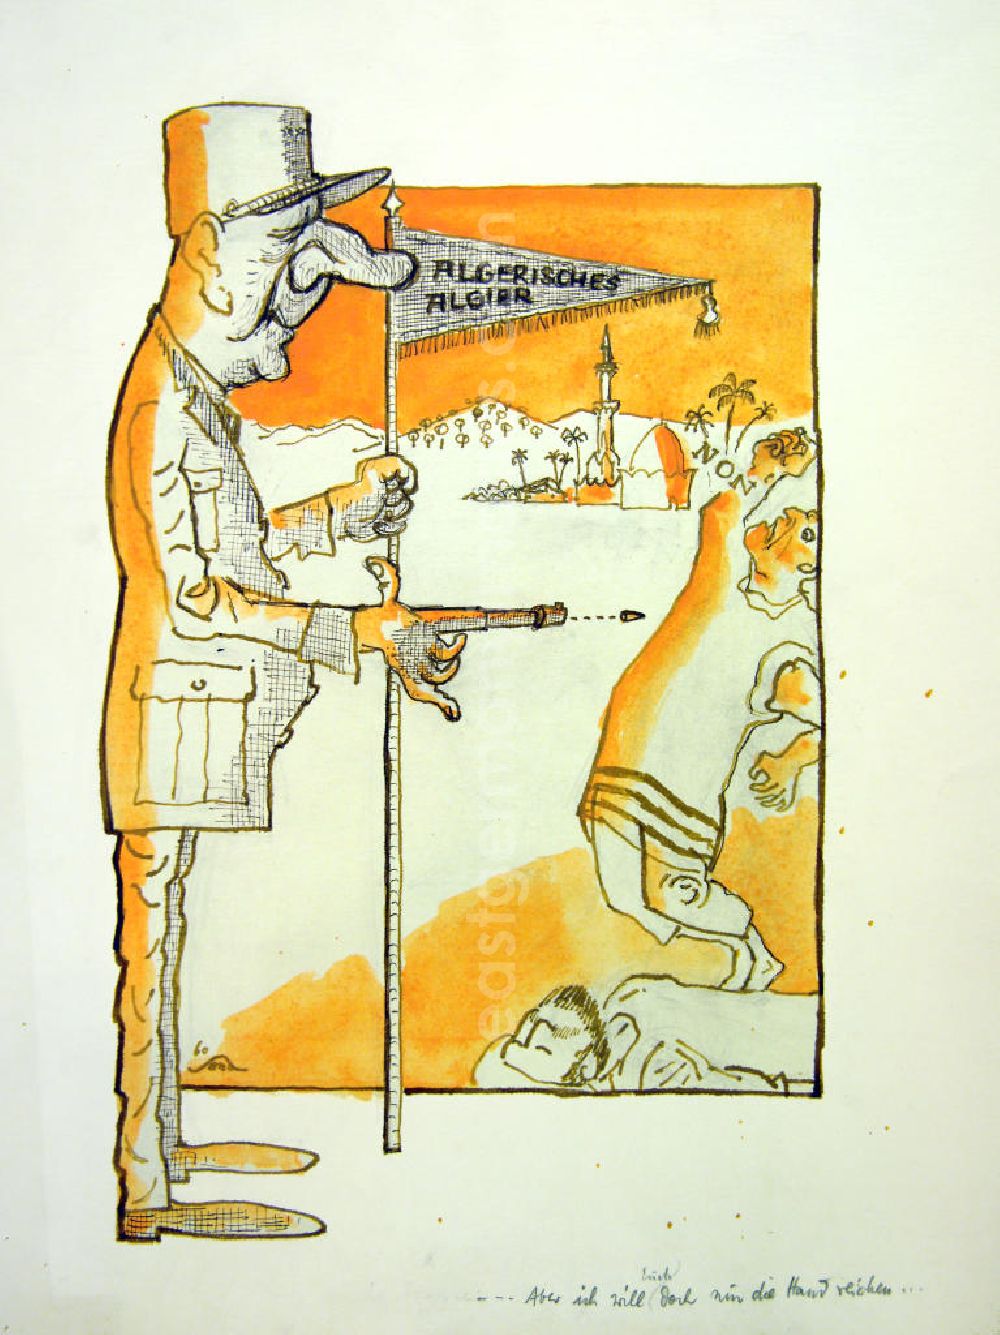 Berlin: Zeichnung von Herbert Sandberg Algerisches Algier aus dem Jahr 1960, 25,5x4